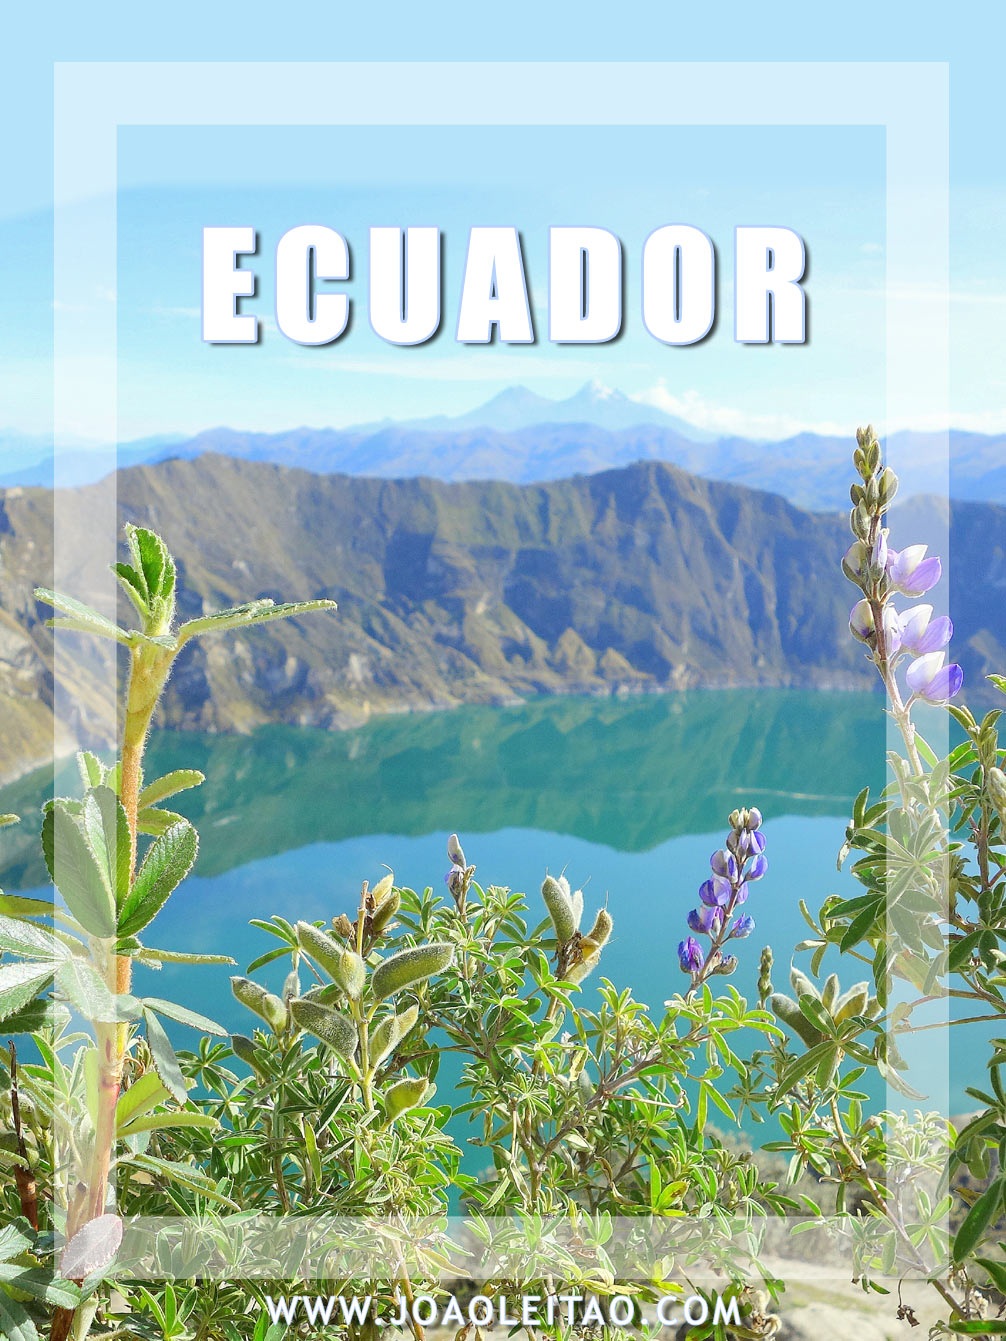 Amazing places to visit in Ecuador